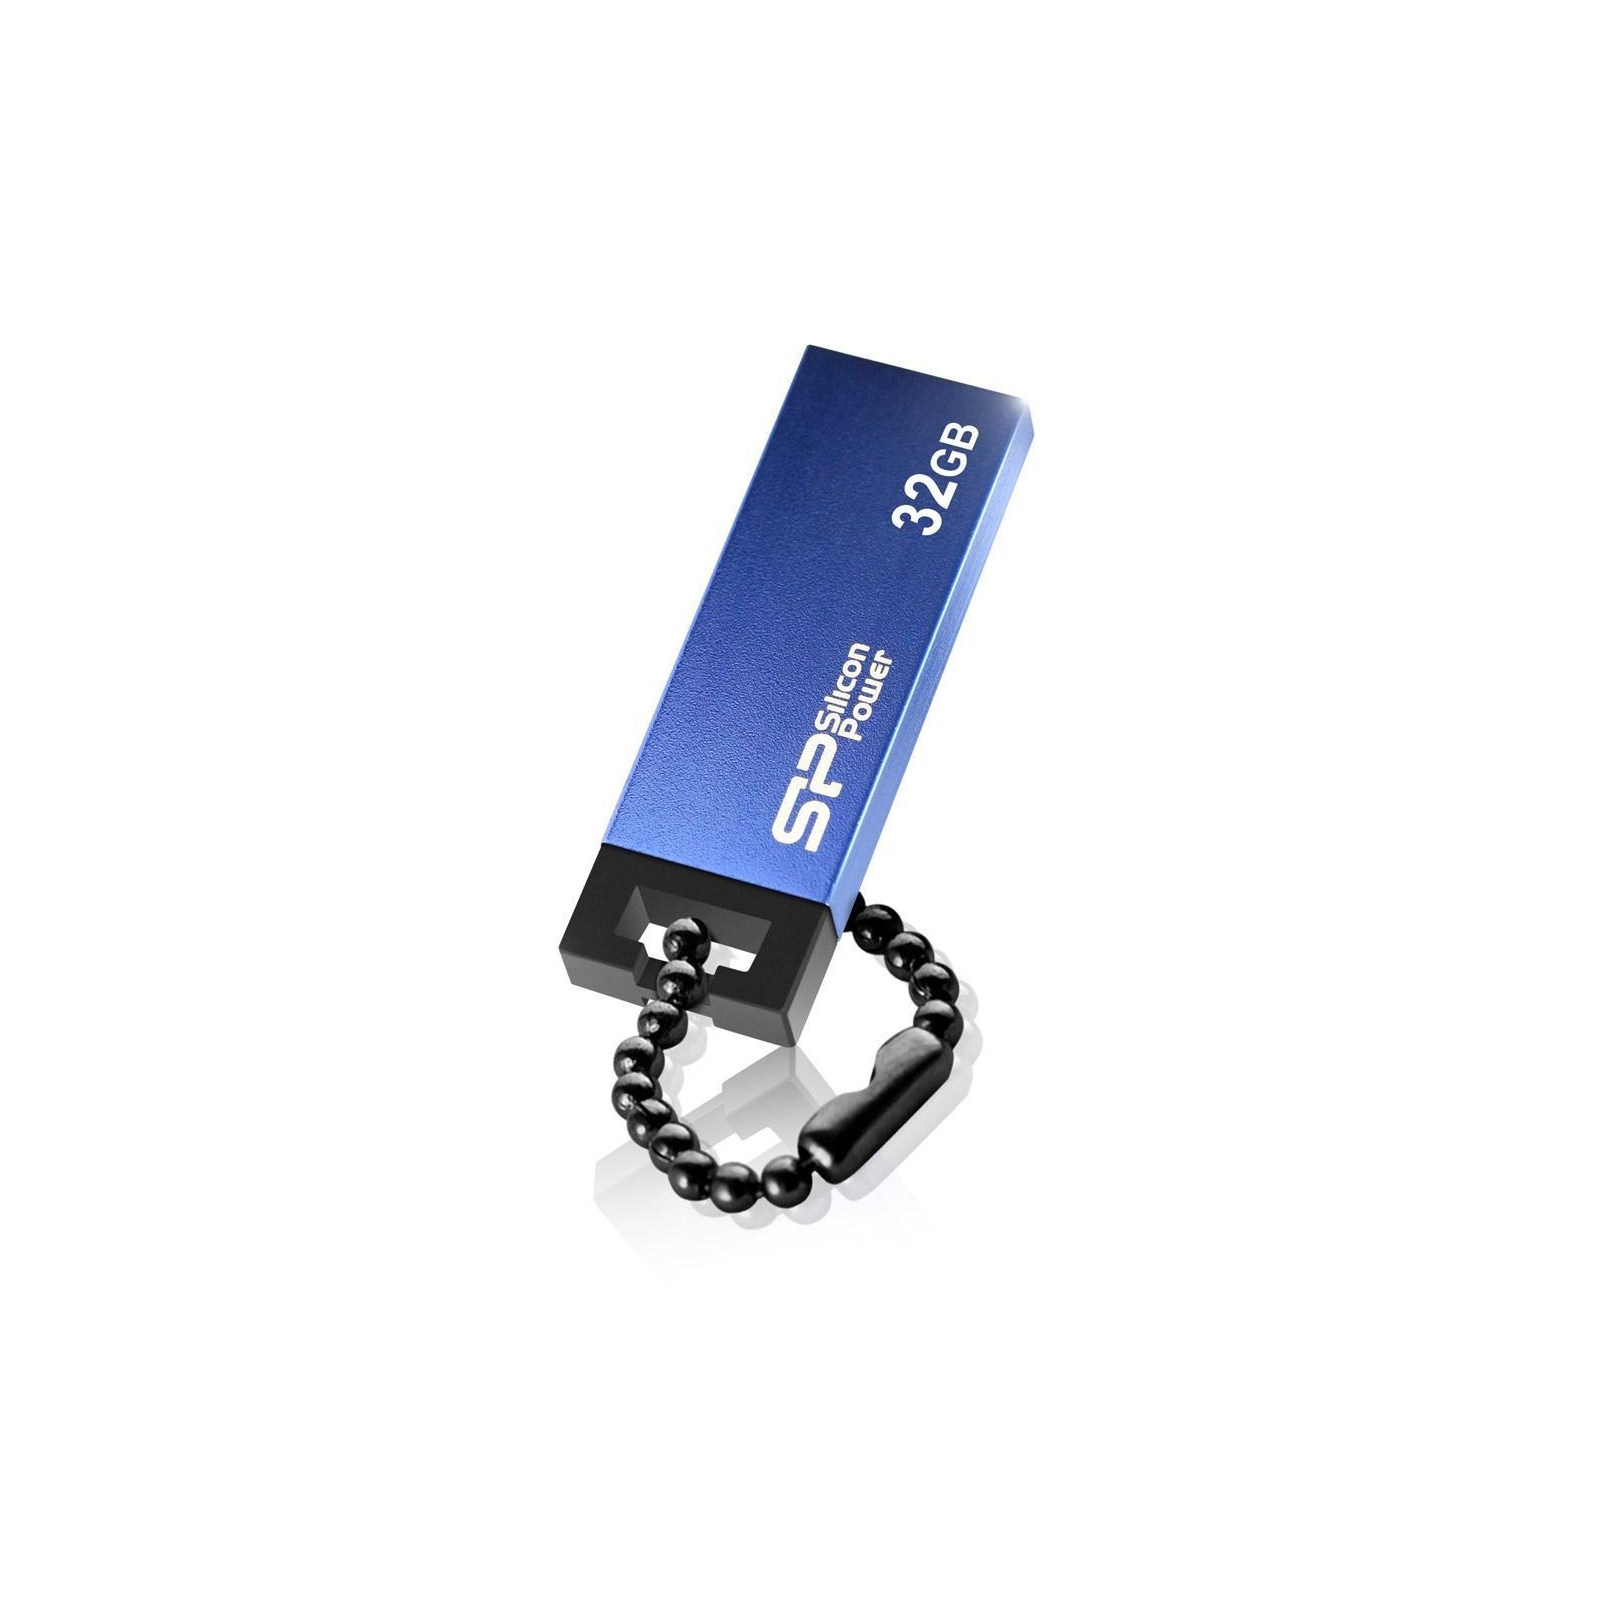 USB флеш накопичувач Silicon Power 32GB 835 Blue USB 2.0 (SP032GBUF2835V1B) зображення 4